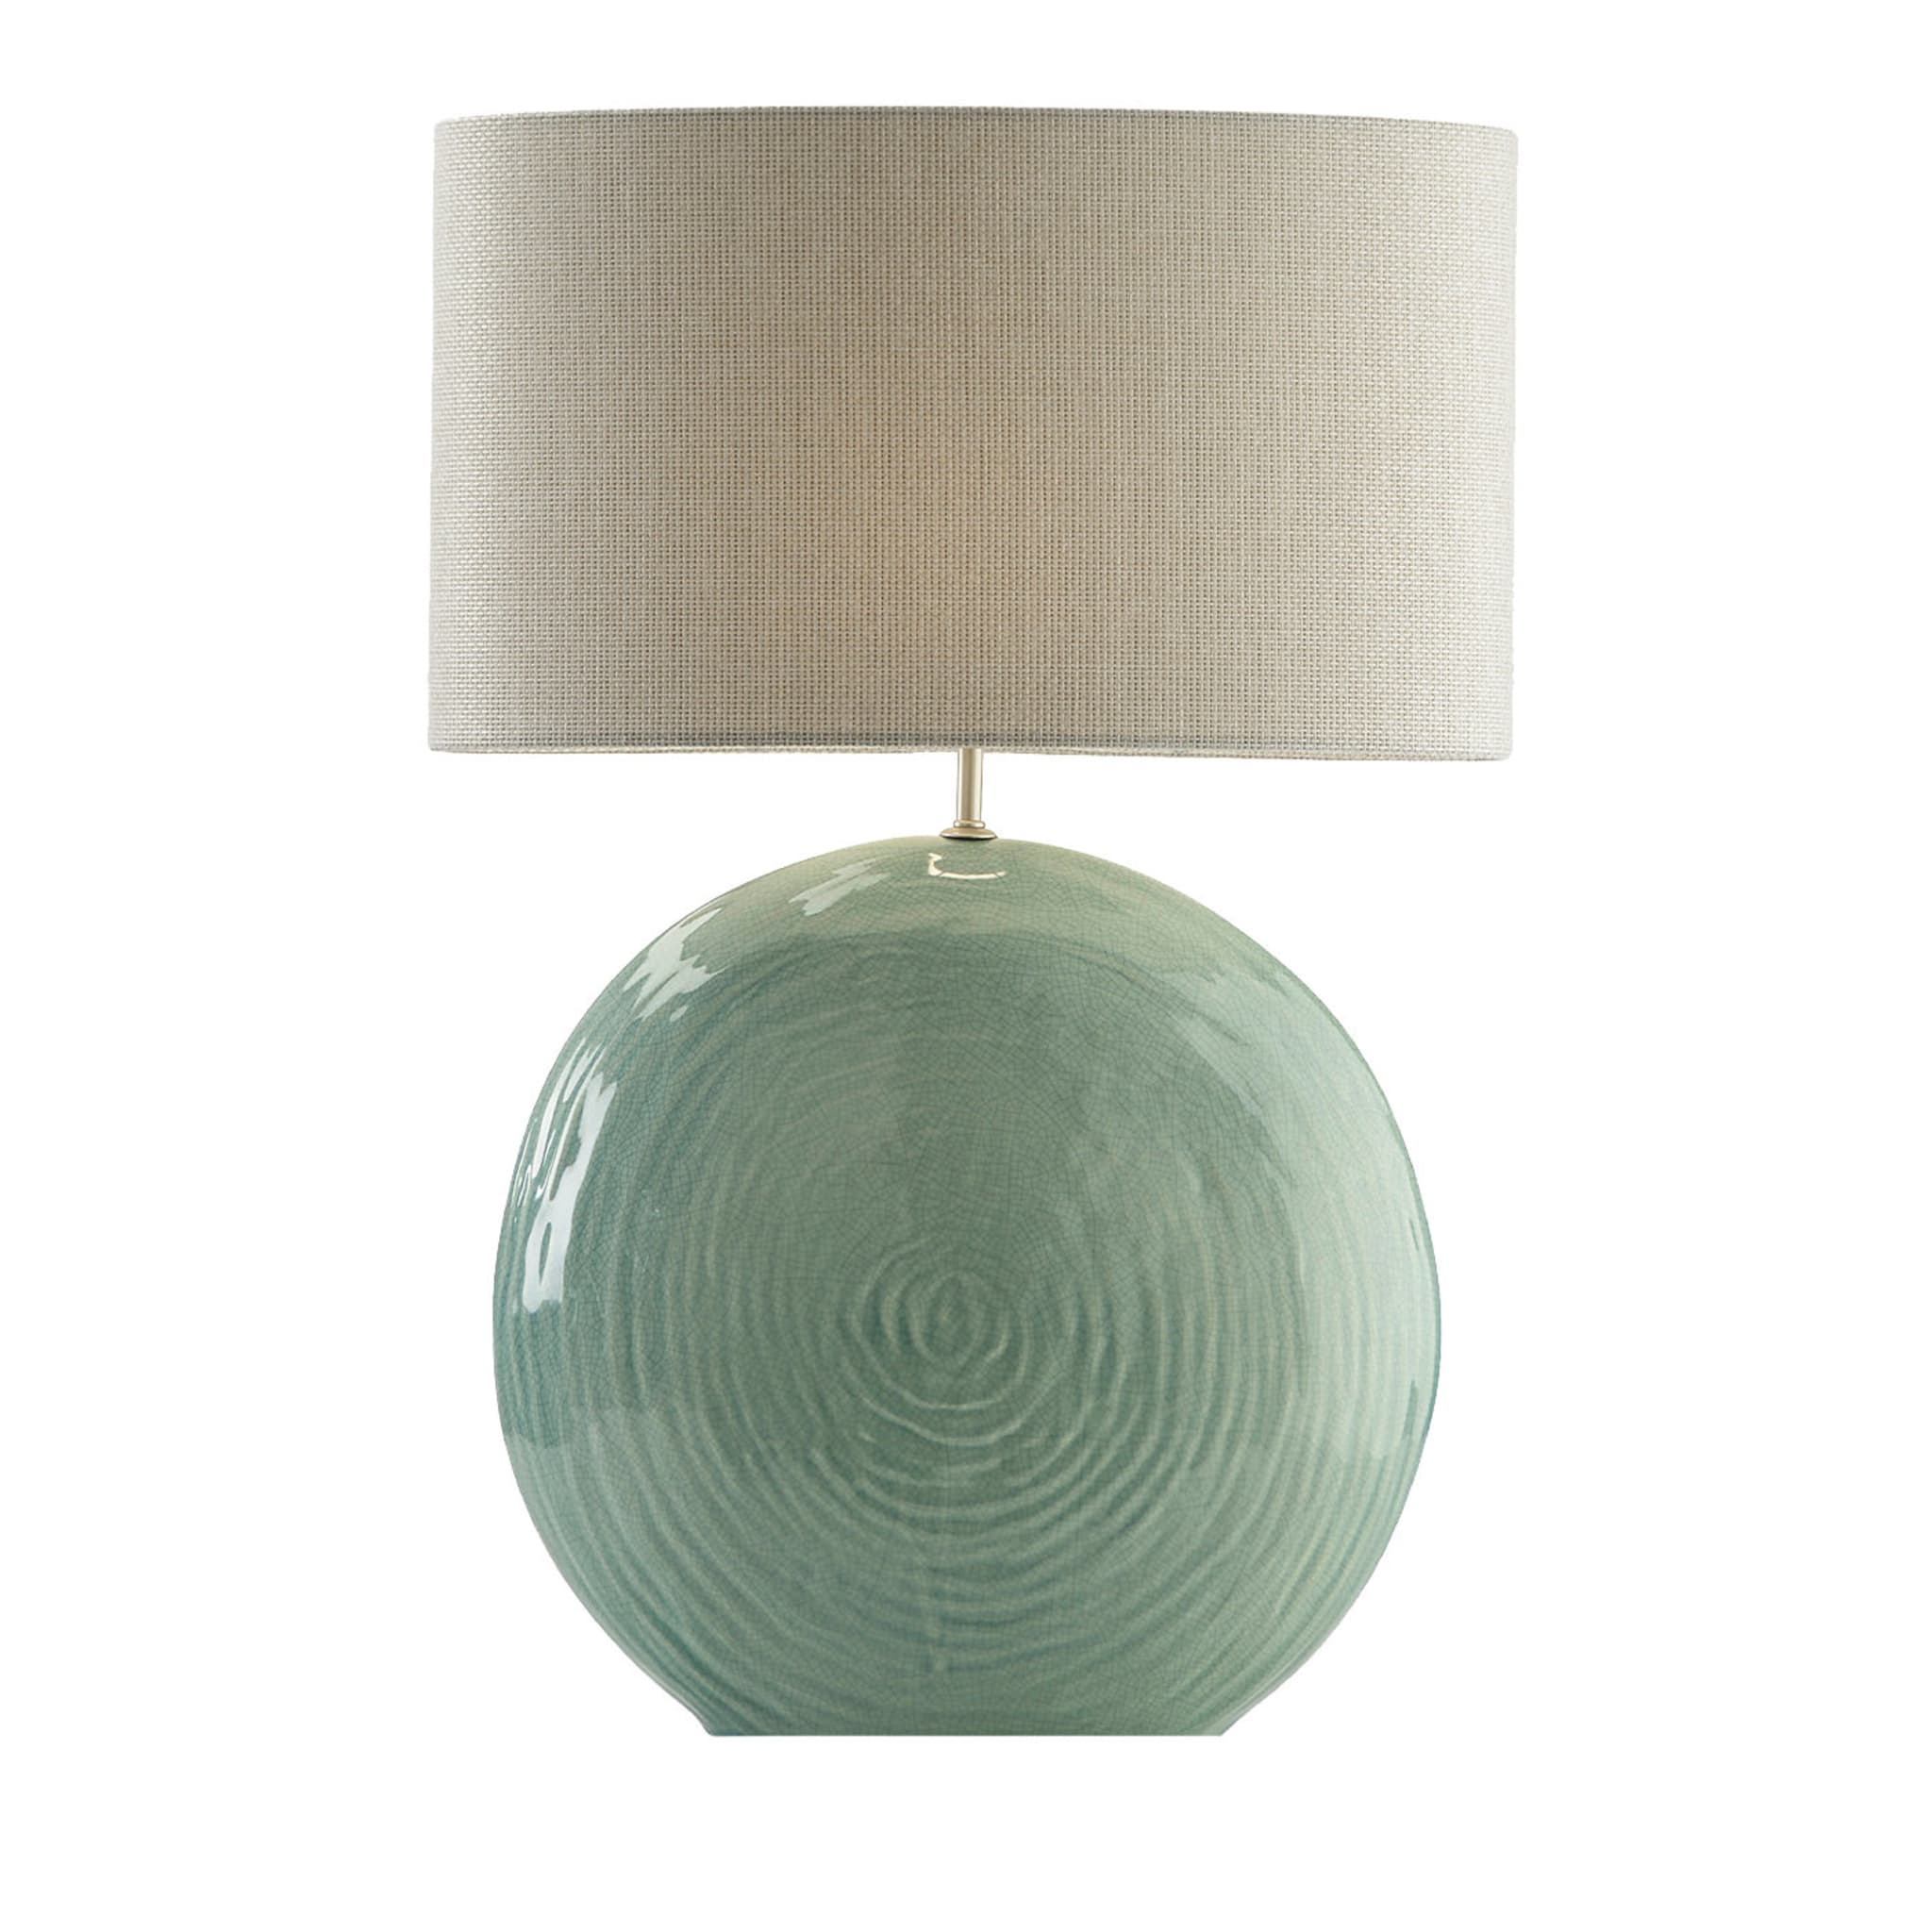 Orus Ceramic Table Lamp Green - Main view